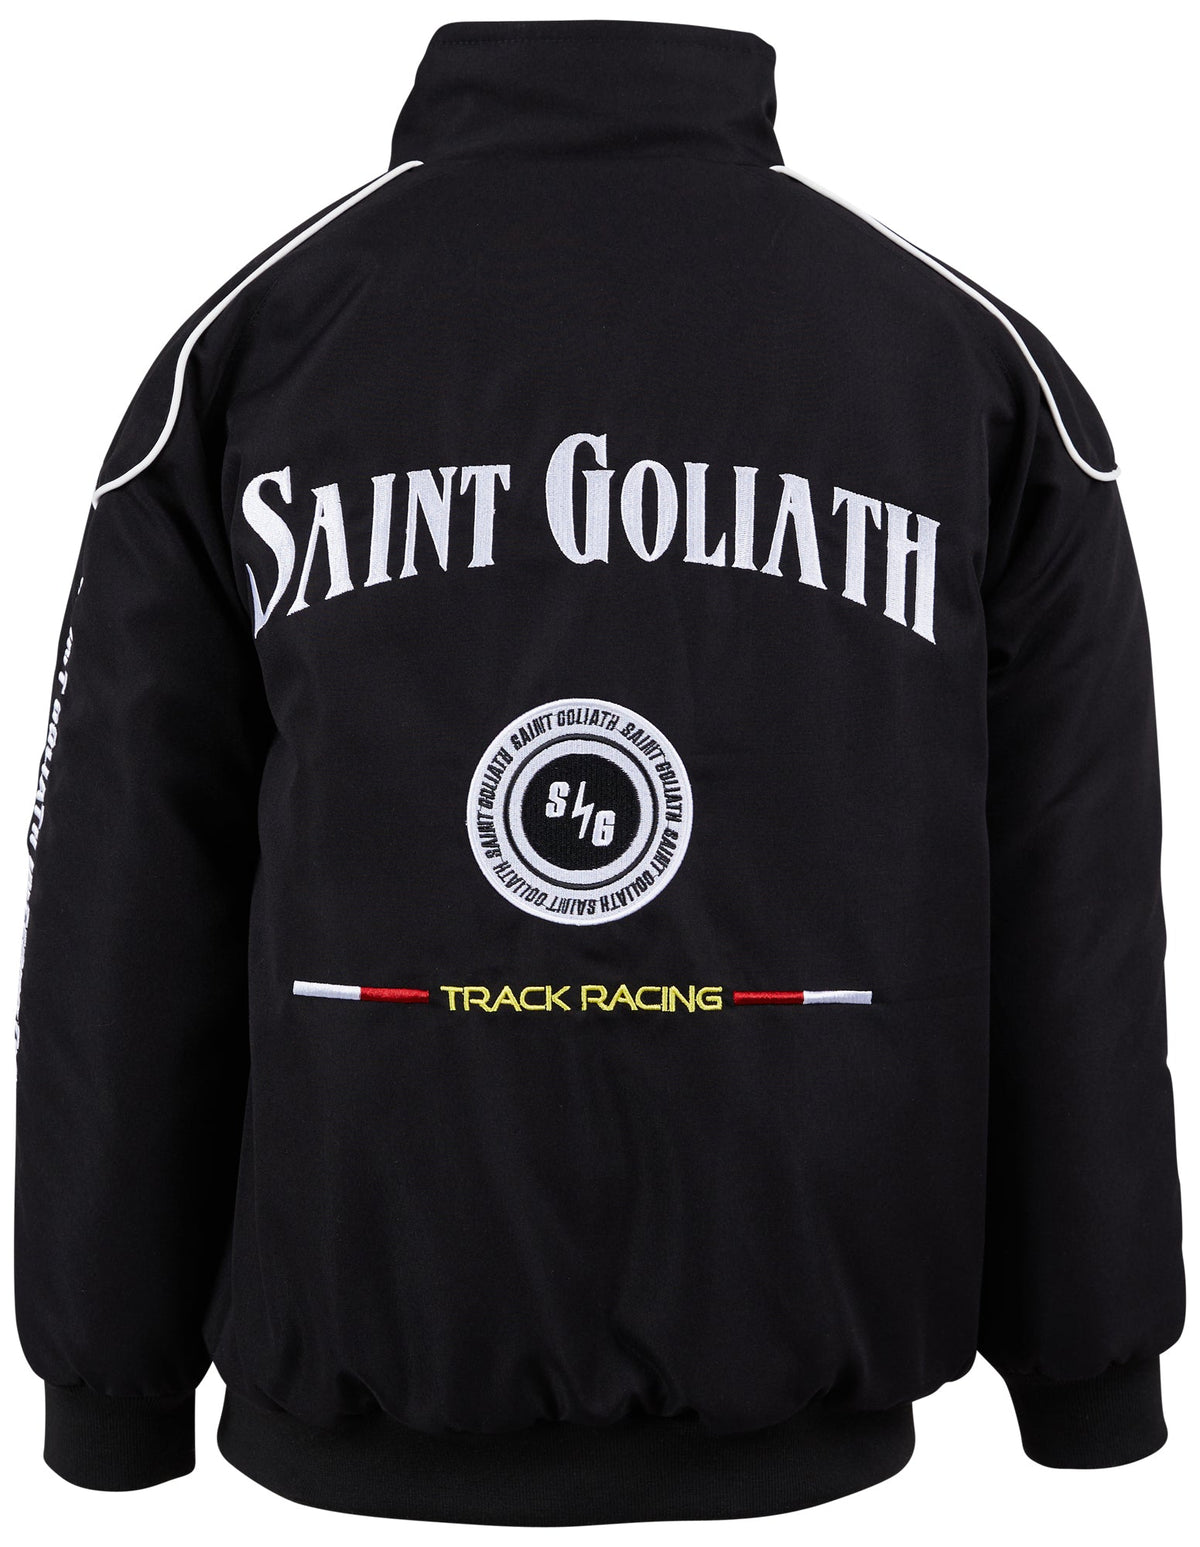 St Goliath 3-7-Kids Speedway Jacket Black-Edge Clothing